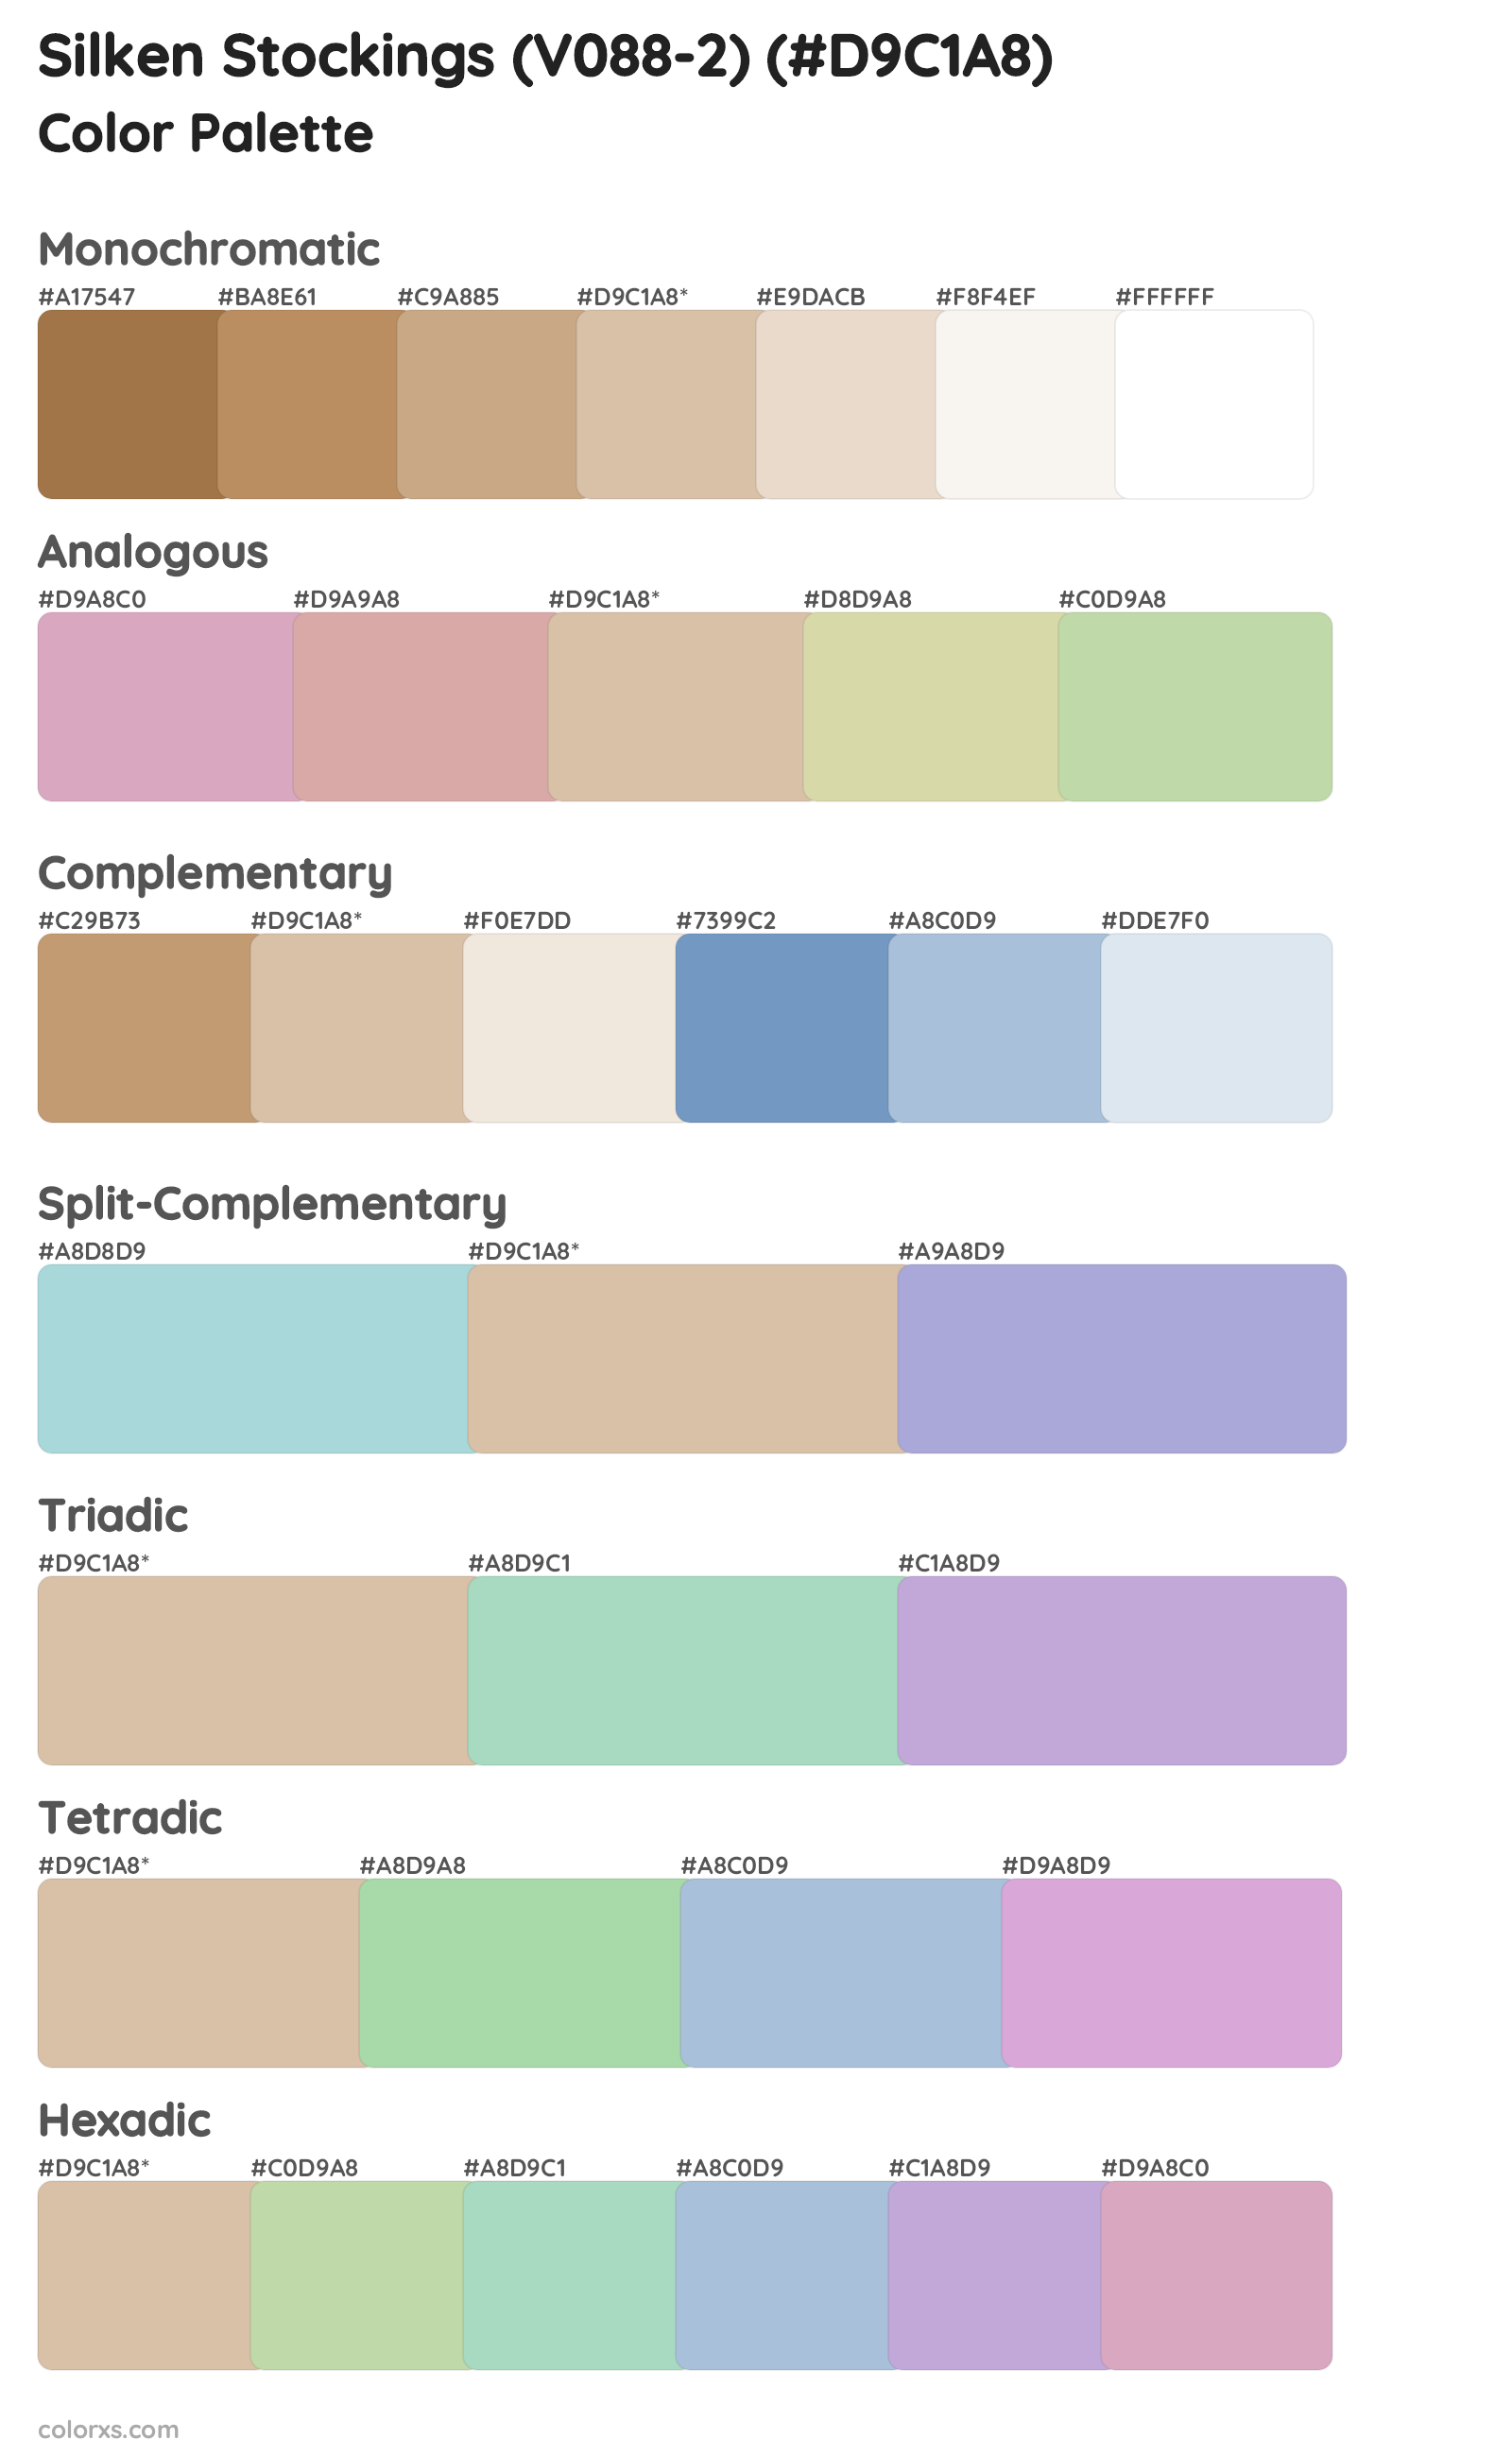 Silken Stockings (V088-2) Color Scheme Palettes